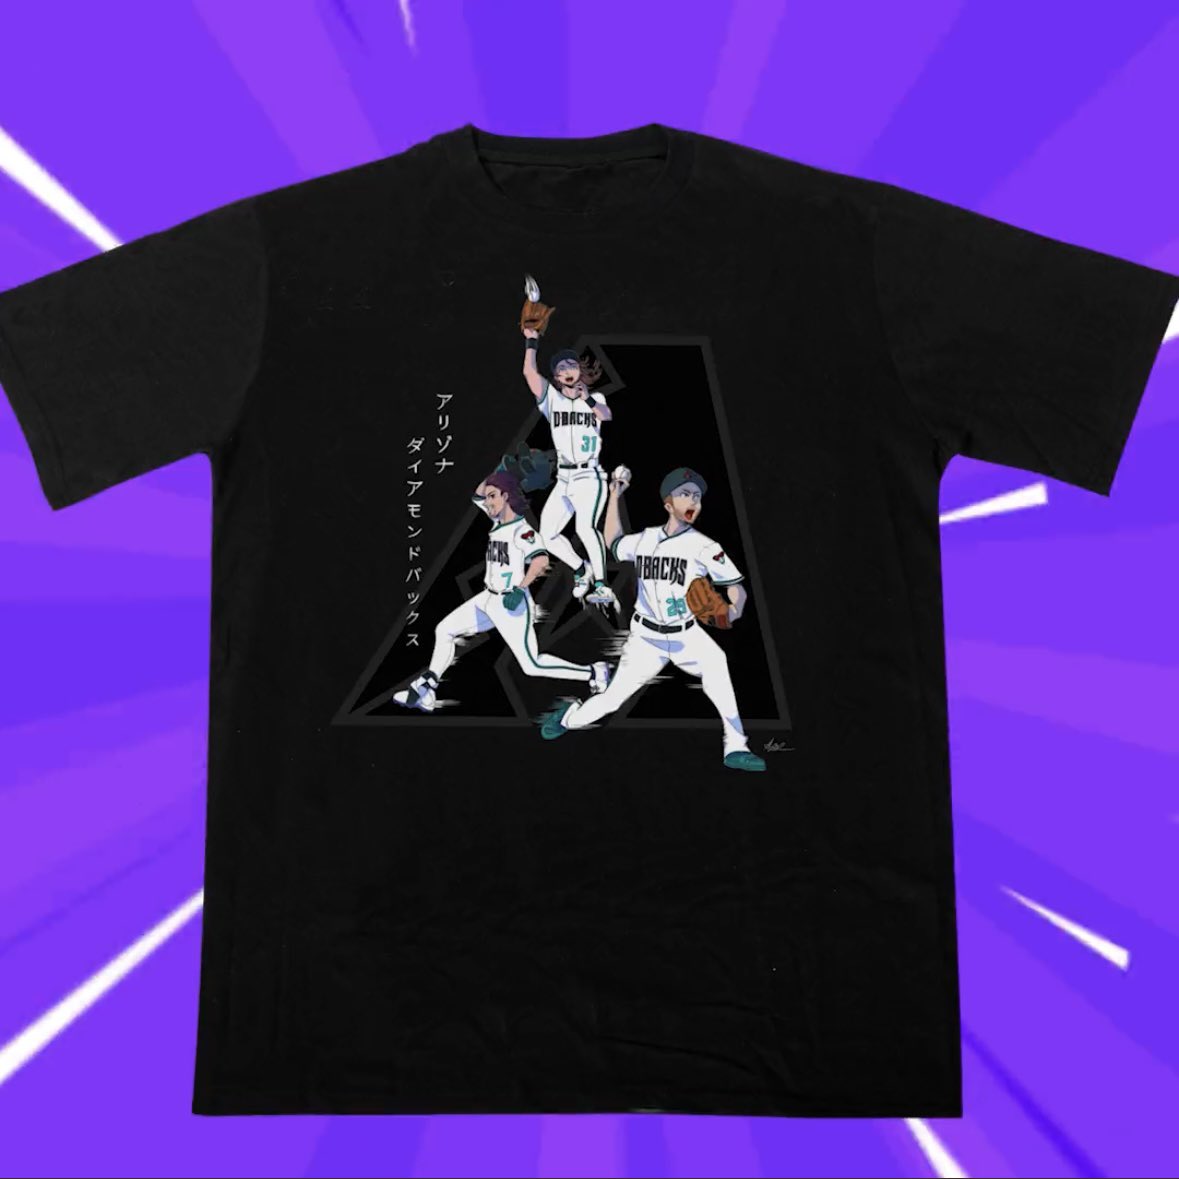 Talkin' Baseball on Twitter: "The Dbacks giving away anime t- shirt on May 13 (via @Dbacks) https://t.co/mkvMucjjwn" / Twitter